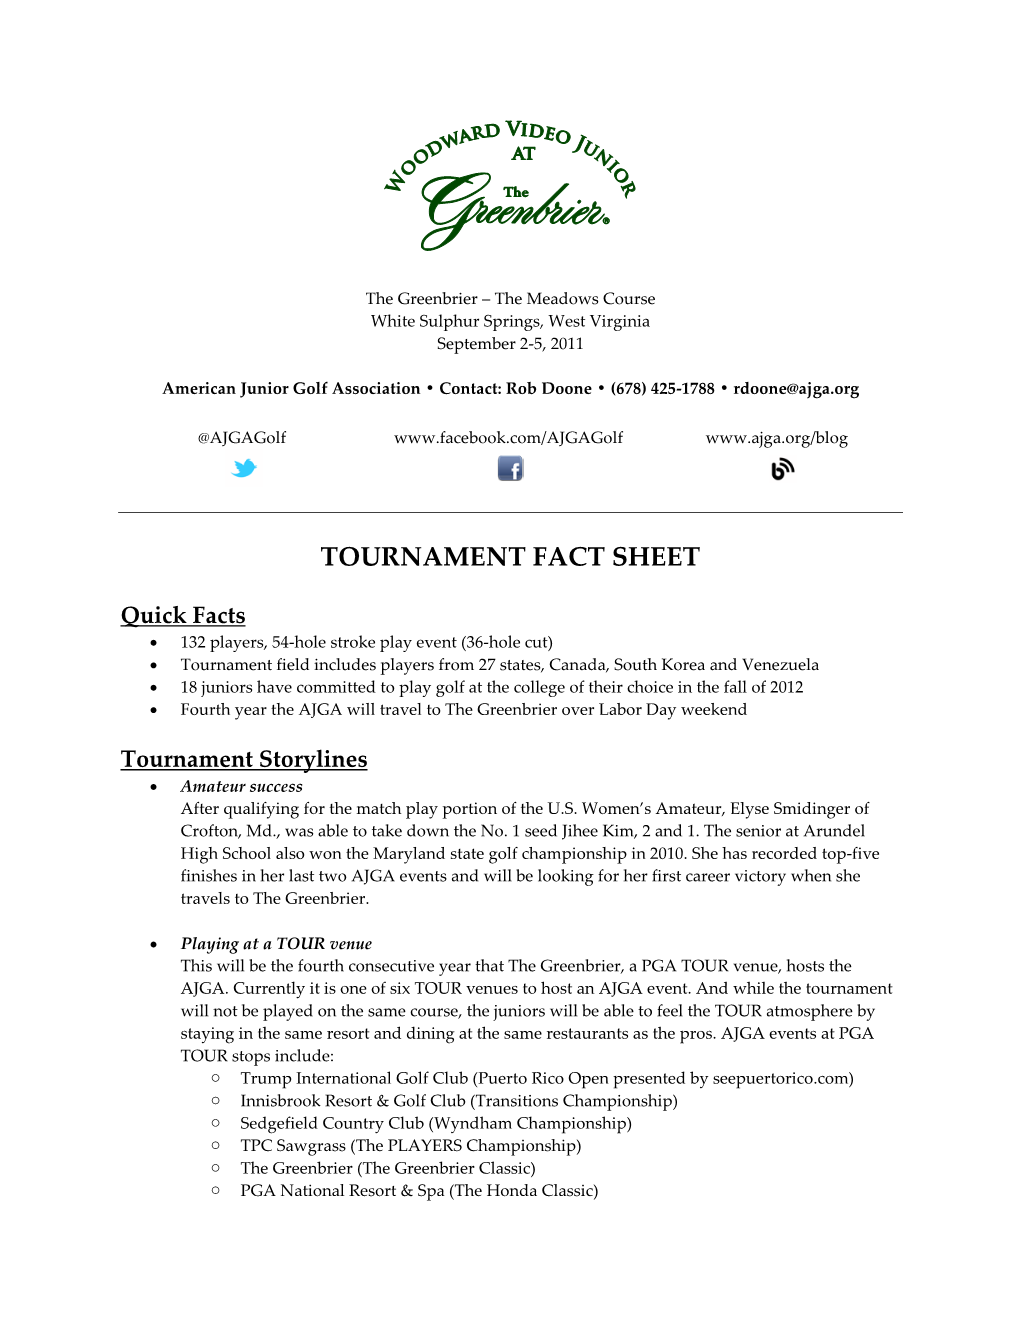 Tournament Fact Sheet